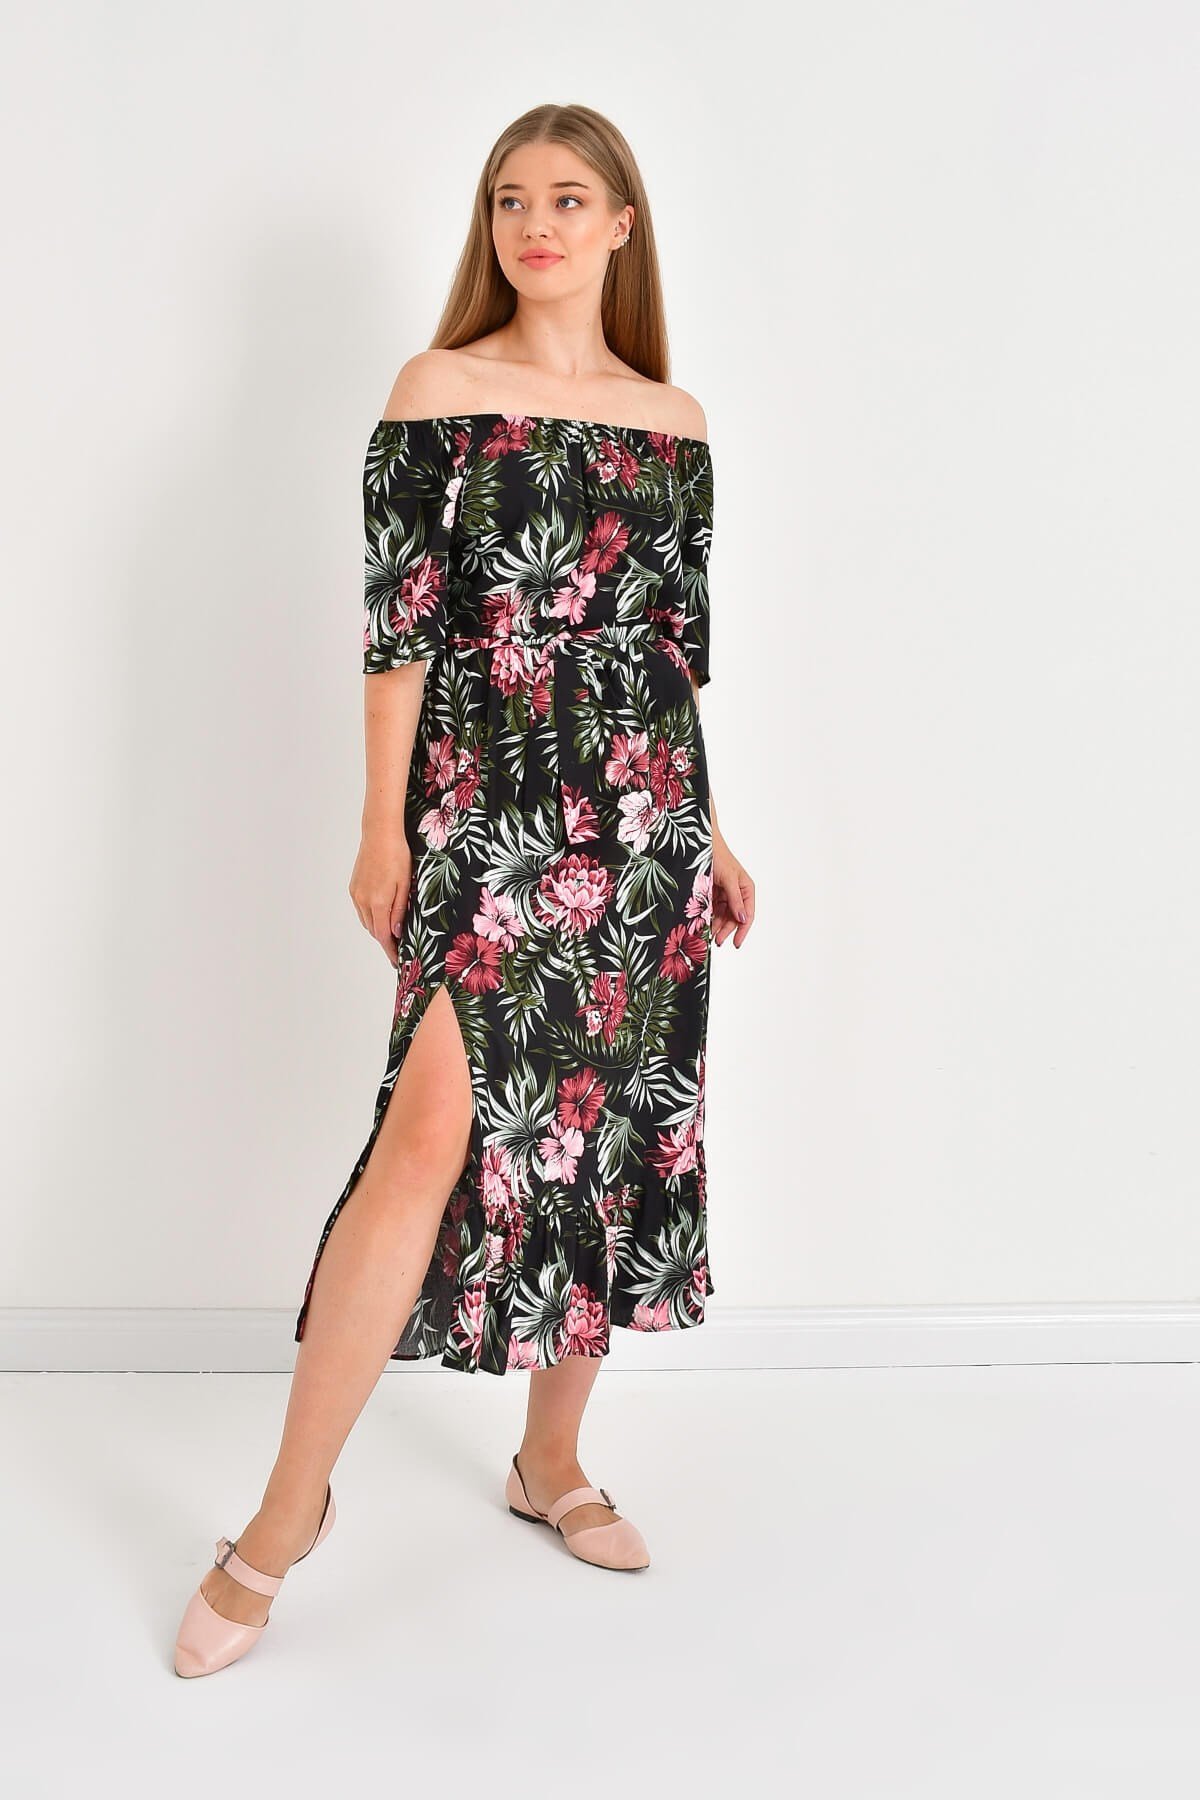 Düşük Omuzlu Yırtmaçlı Elbise - Mylinemoda.com